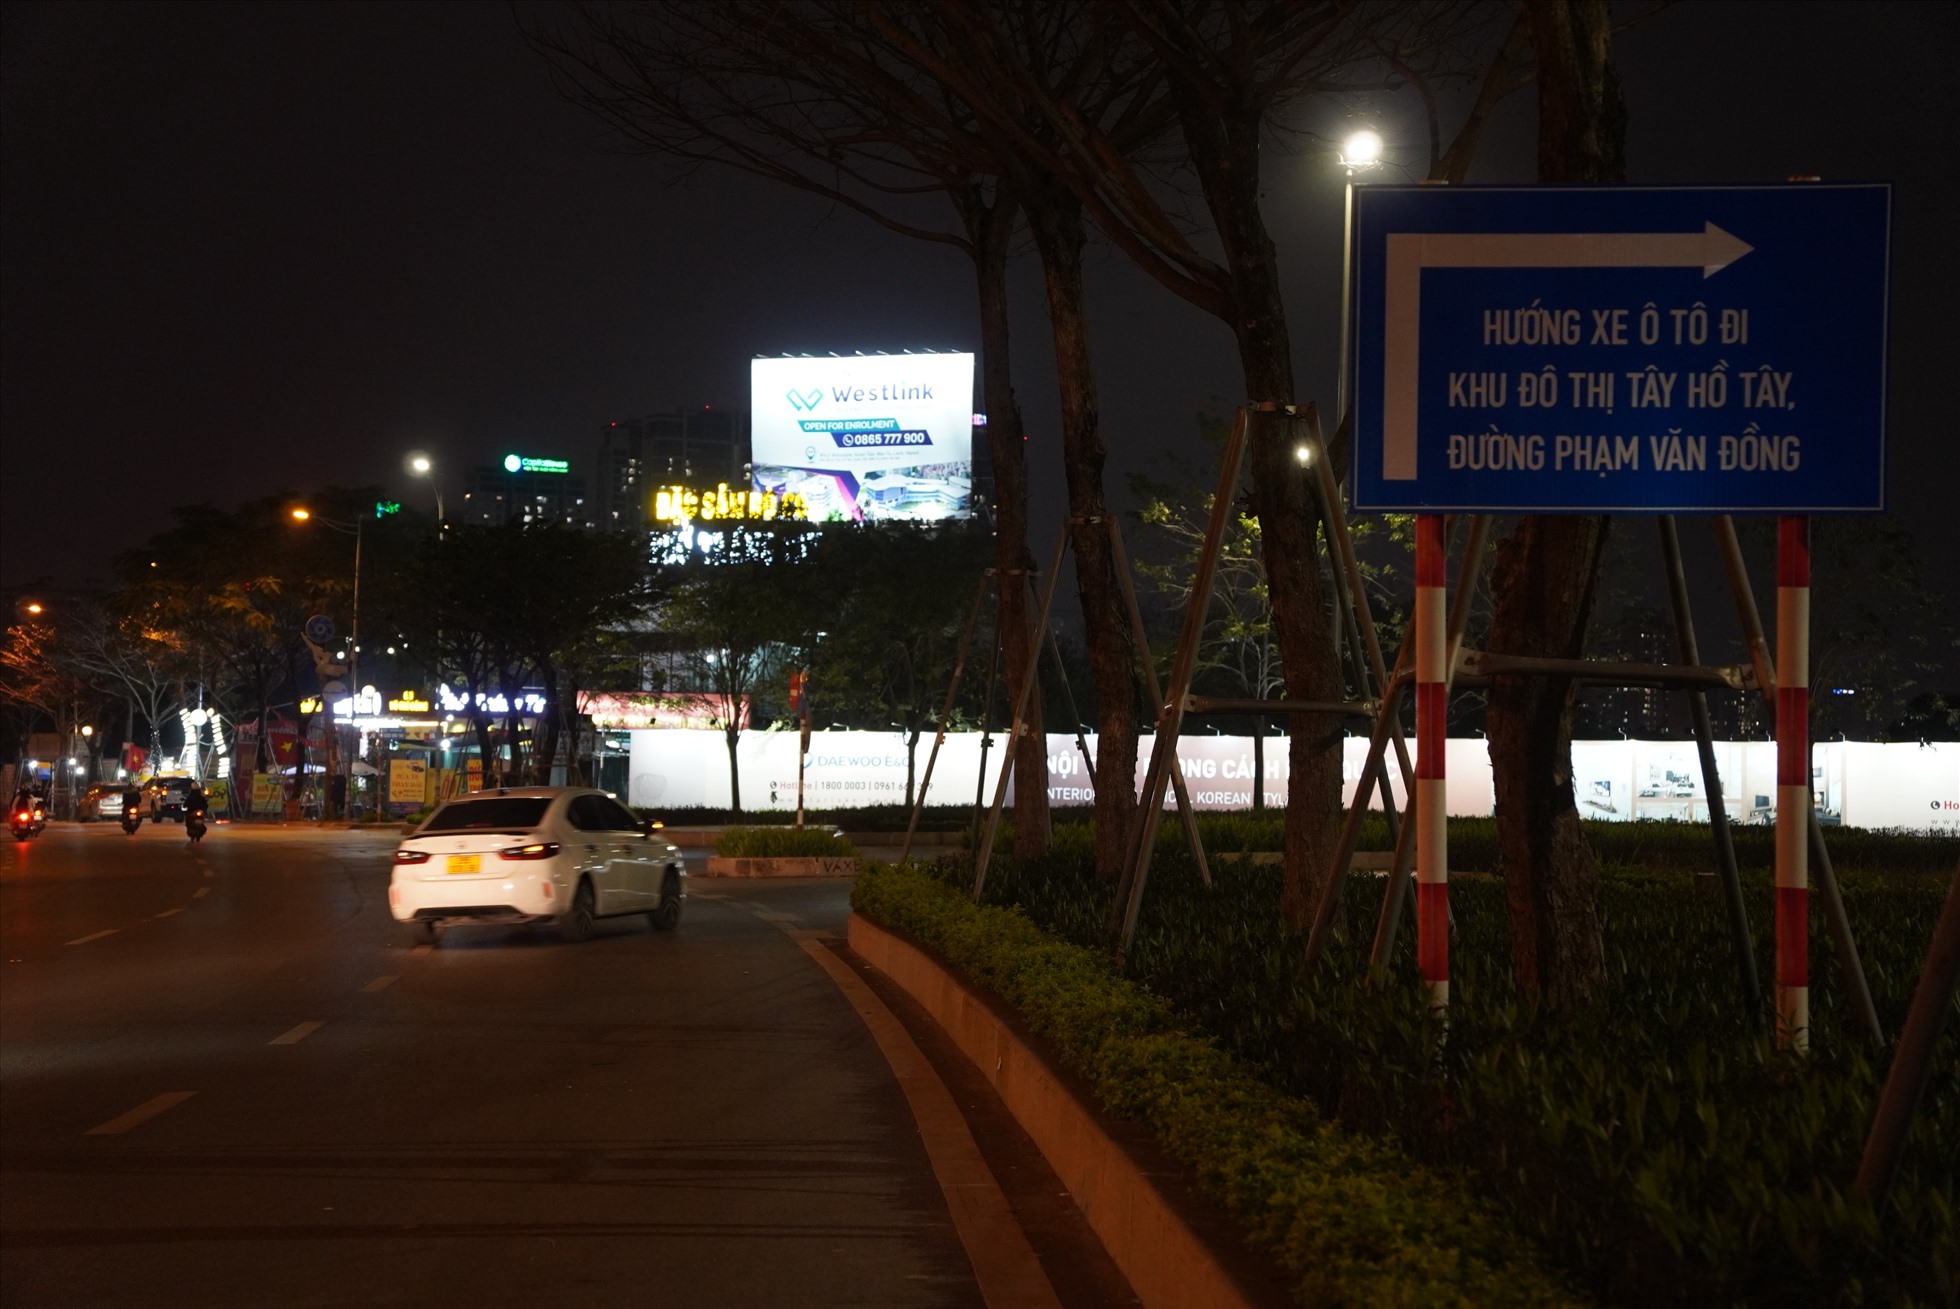 Trong thời gian cấm cầu Nhật Tân, các xe đi cầu Thăng Long theo các hướng đường Võ Chí Công - Nguyễn Hoàng Tôn - Phạm Văn Đồng